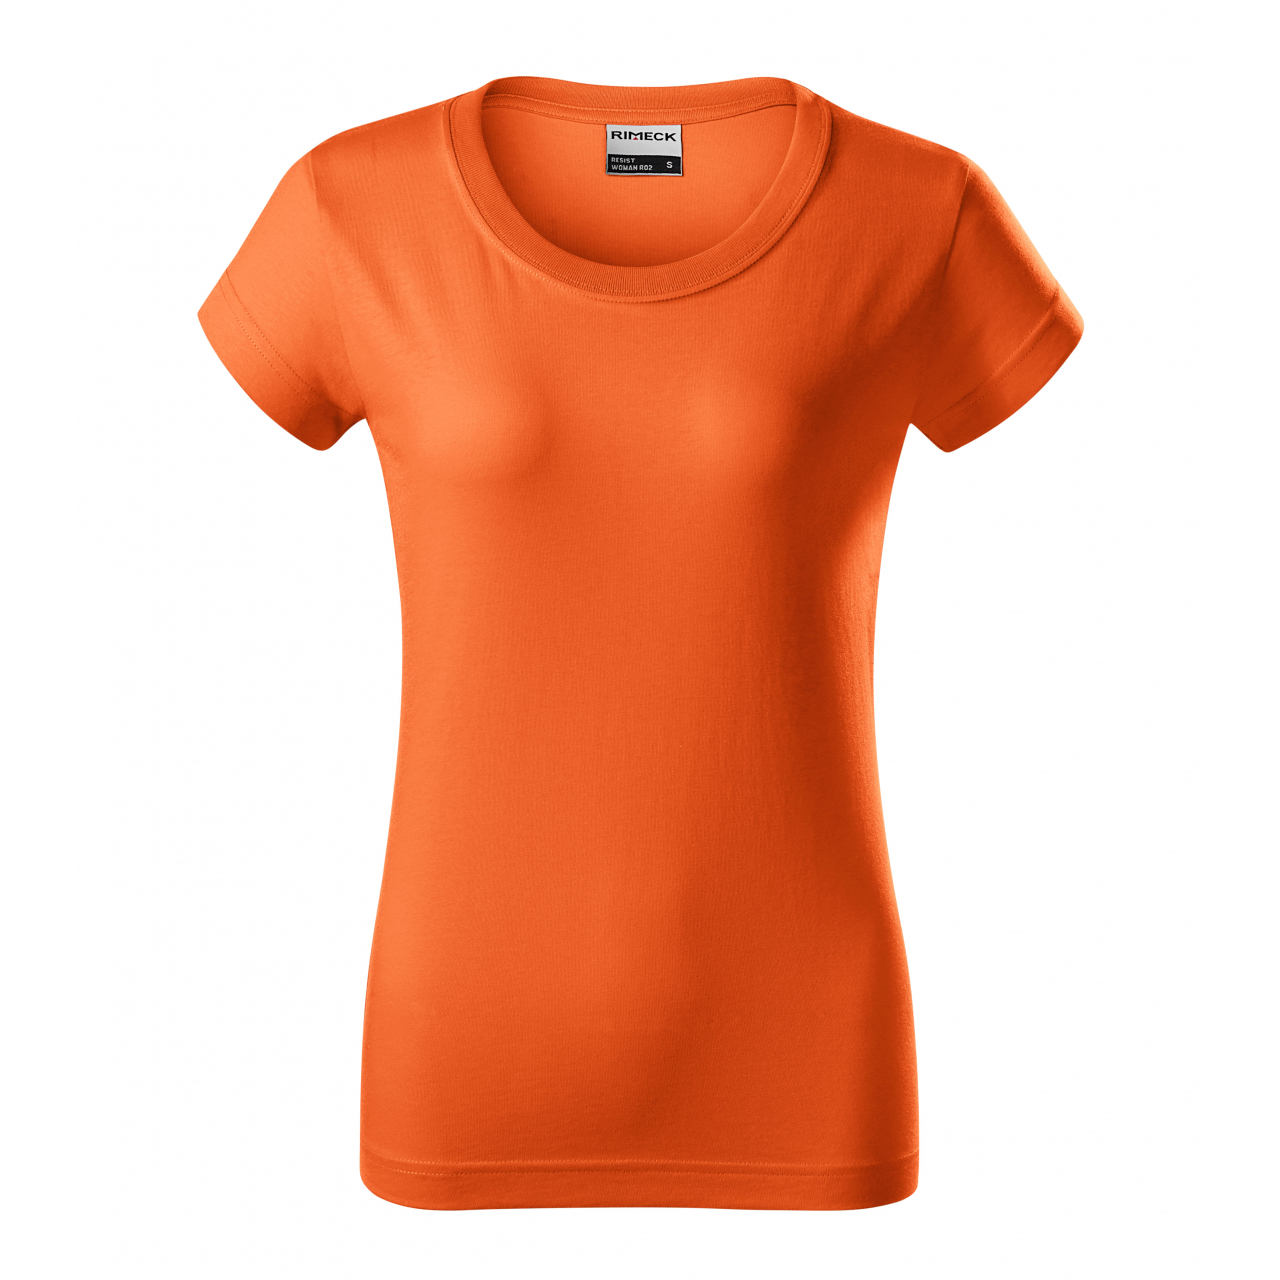 Tričko dámské Rimeck Resist - oranžové, 3XL